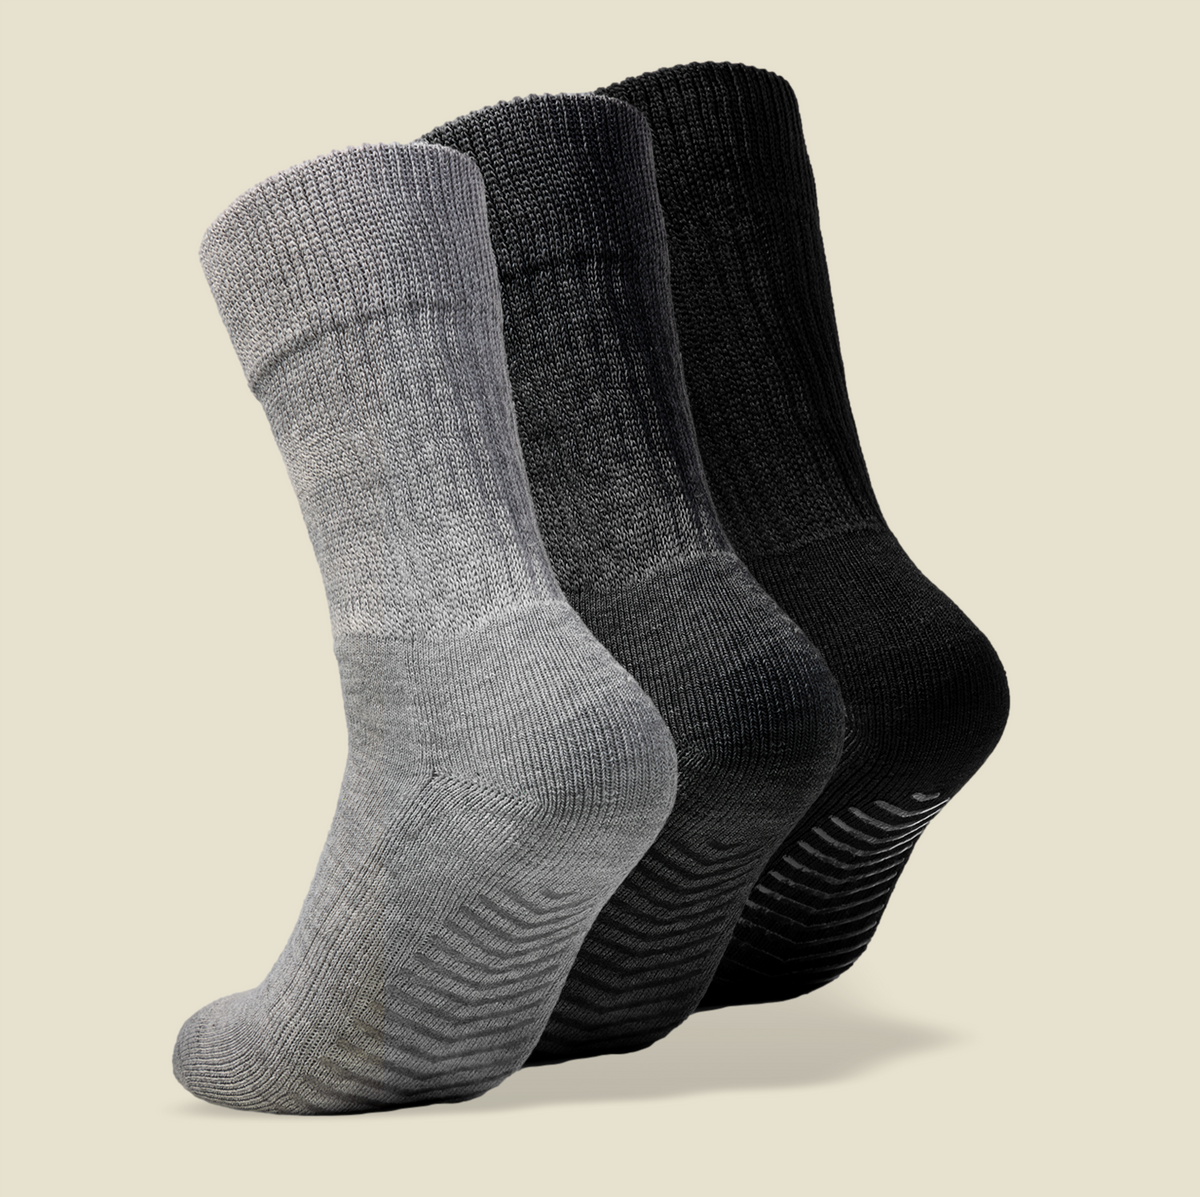 Men's Low Cut Grip Socks - Gripjoy Socks